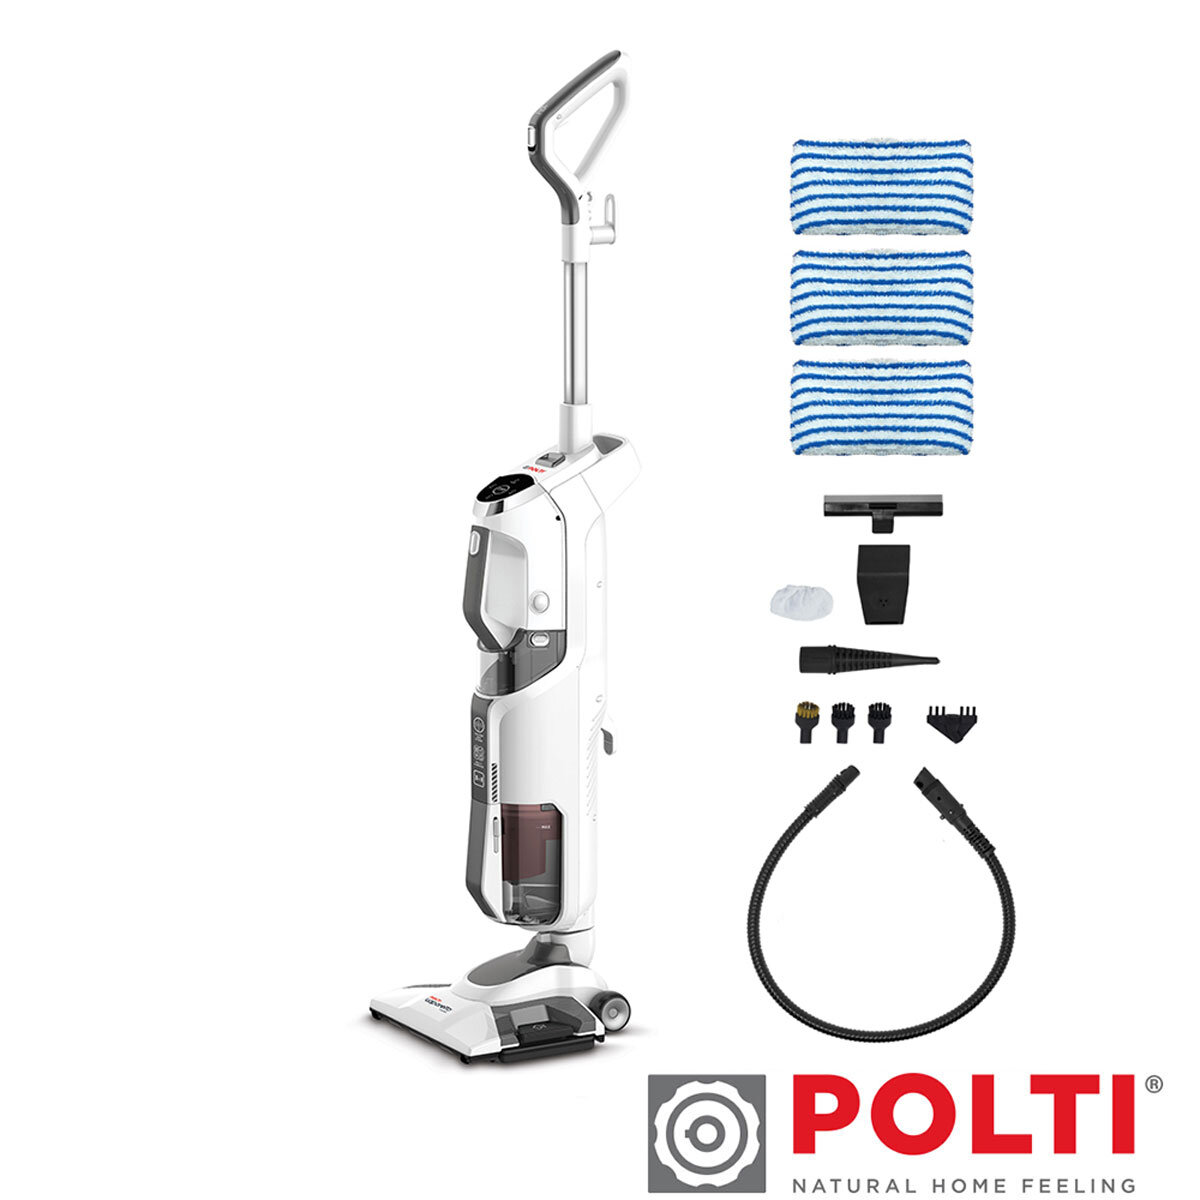 ♨️ Polti PTGB0049 Vaporetto Go 3.5 Bar Steam Cleaner - Review 